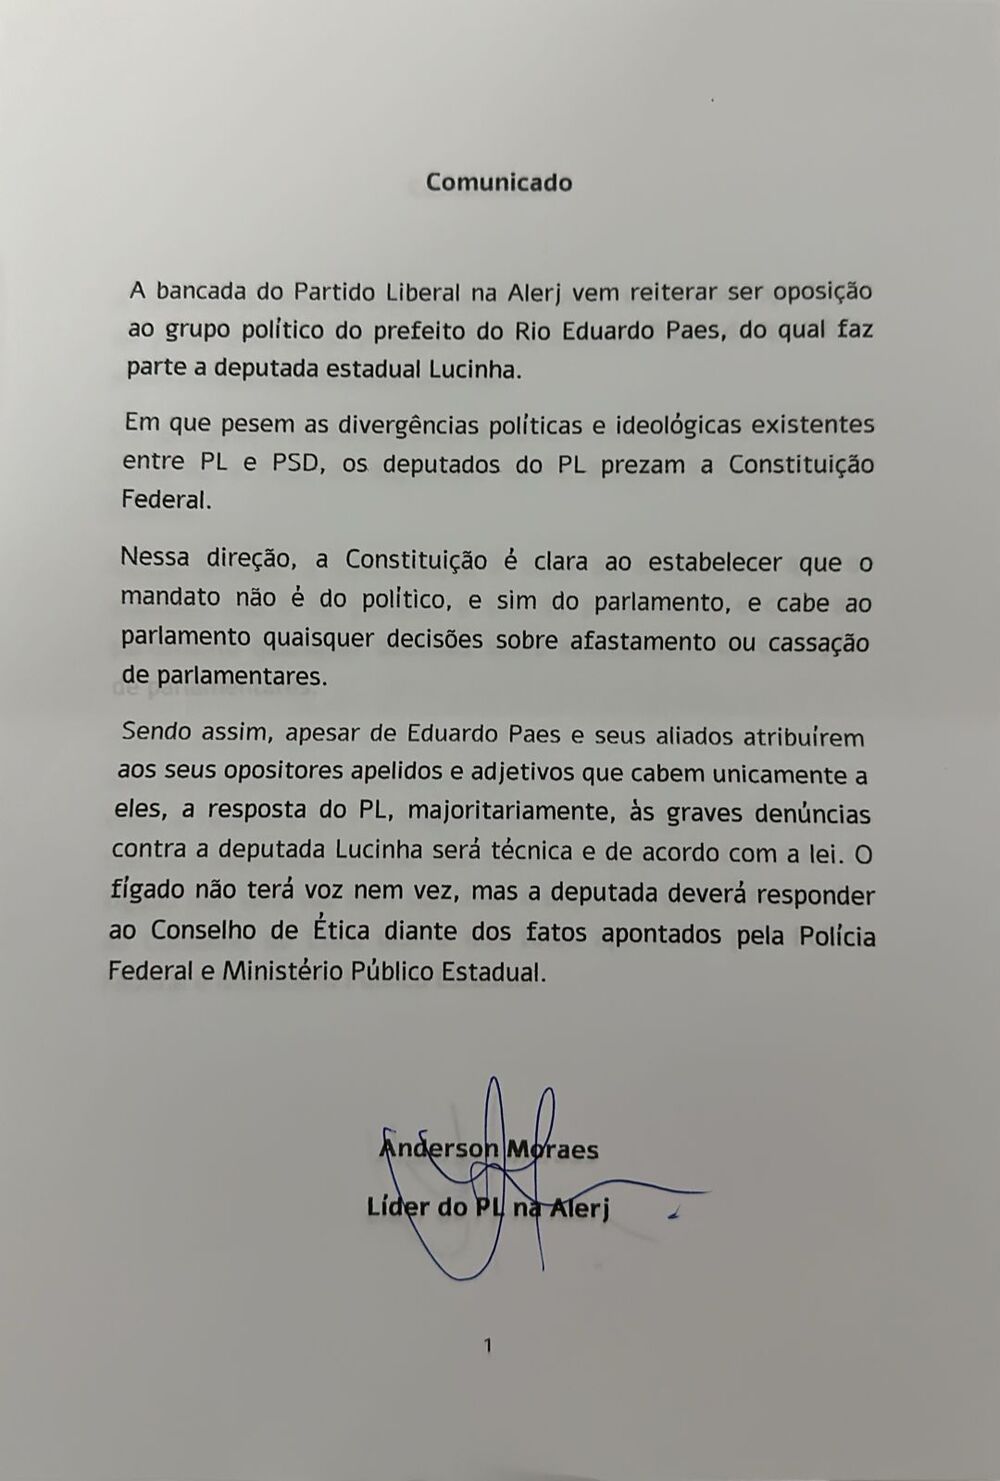 Comunicado expedido nesta quarta-feira (7) pela bancada do PL na Alerj sobre o voto que será dado amanhã no caso contra a deputada Lucinha